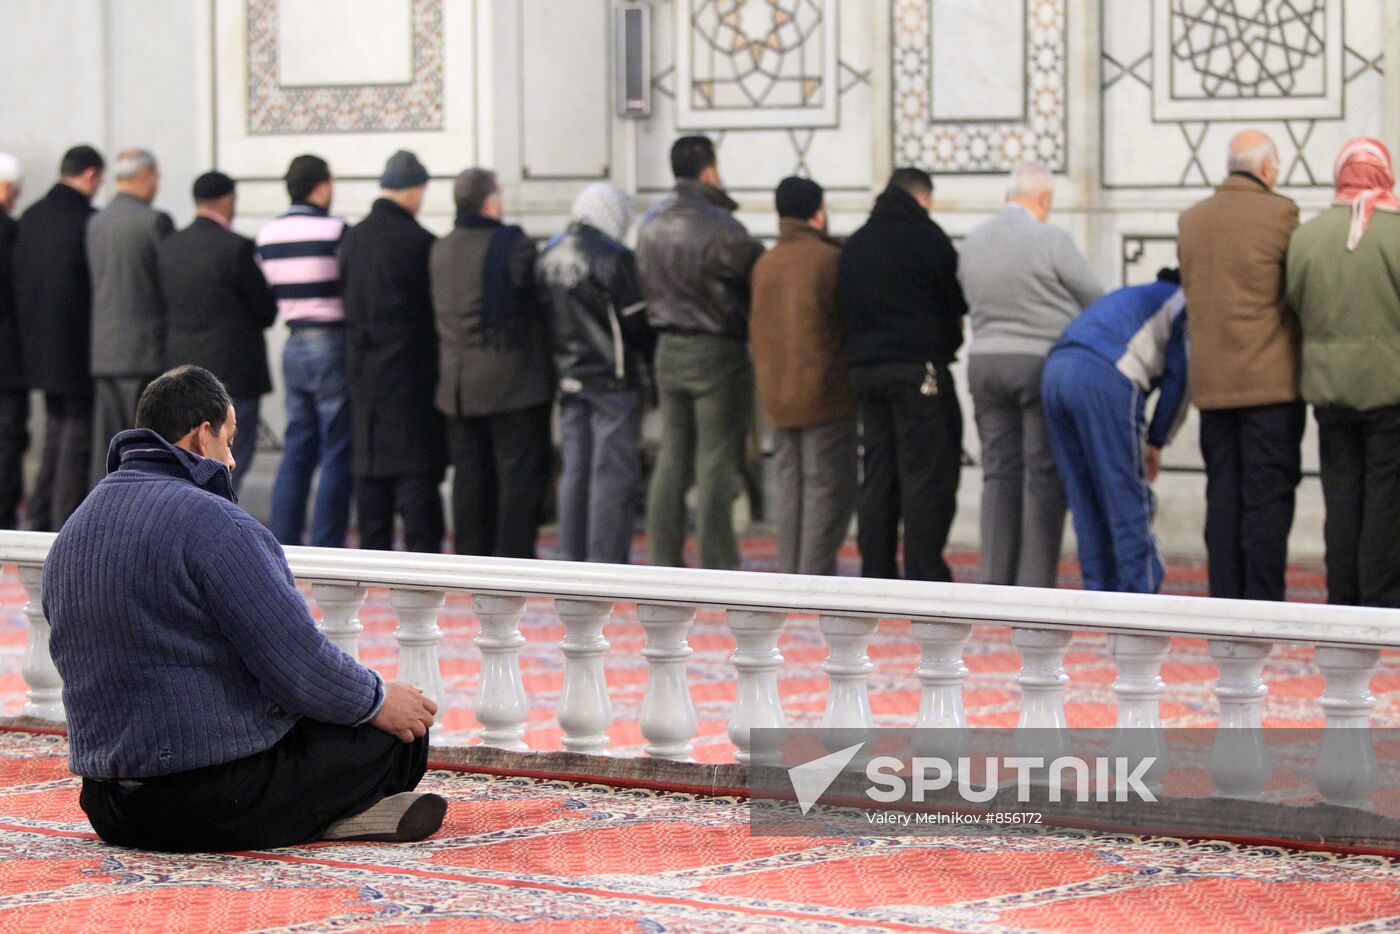 Damascus residents perform Salah at Umayyad Mosque